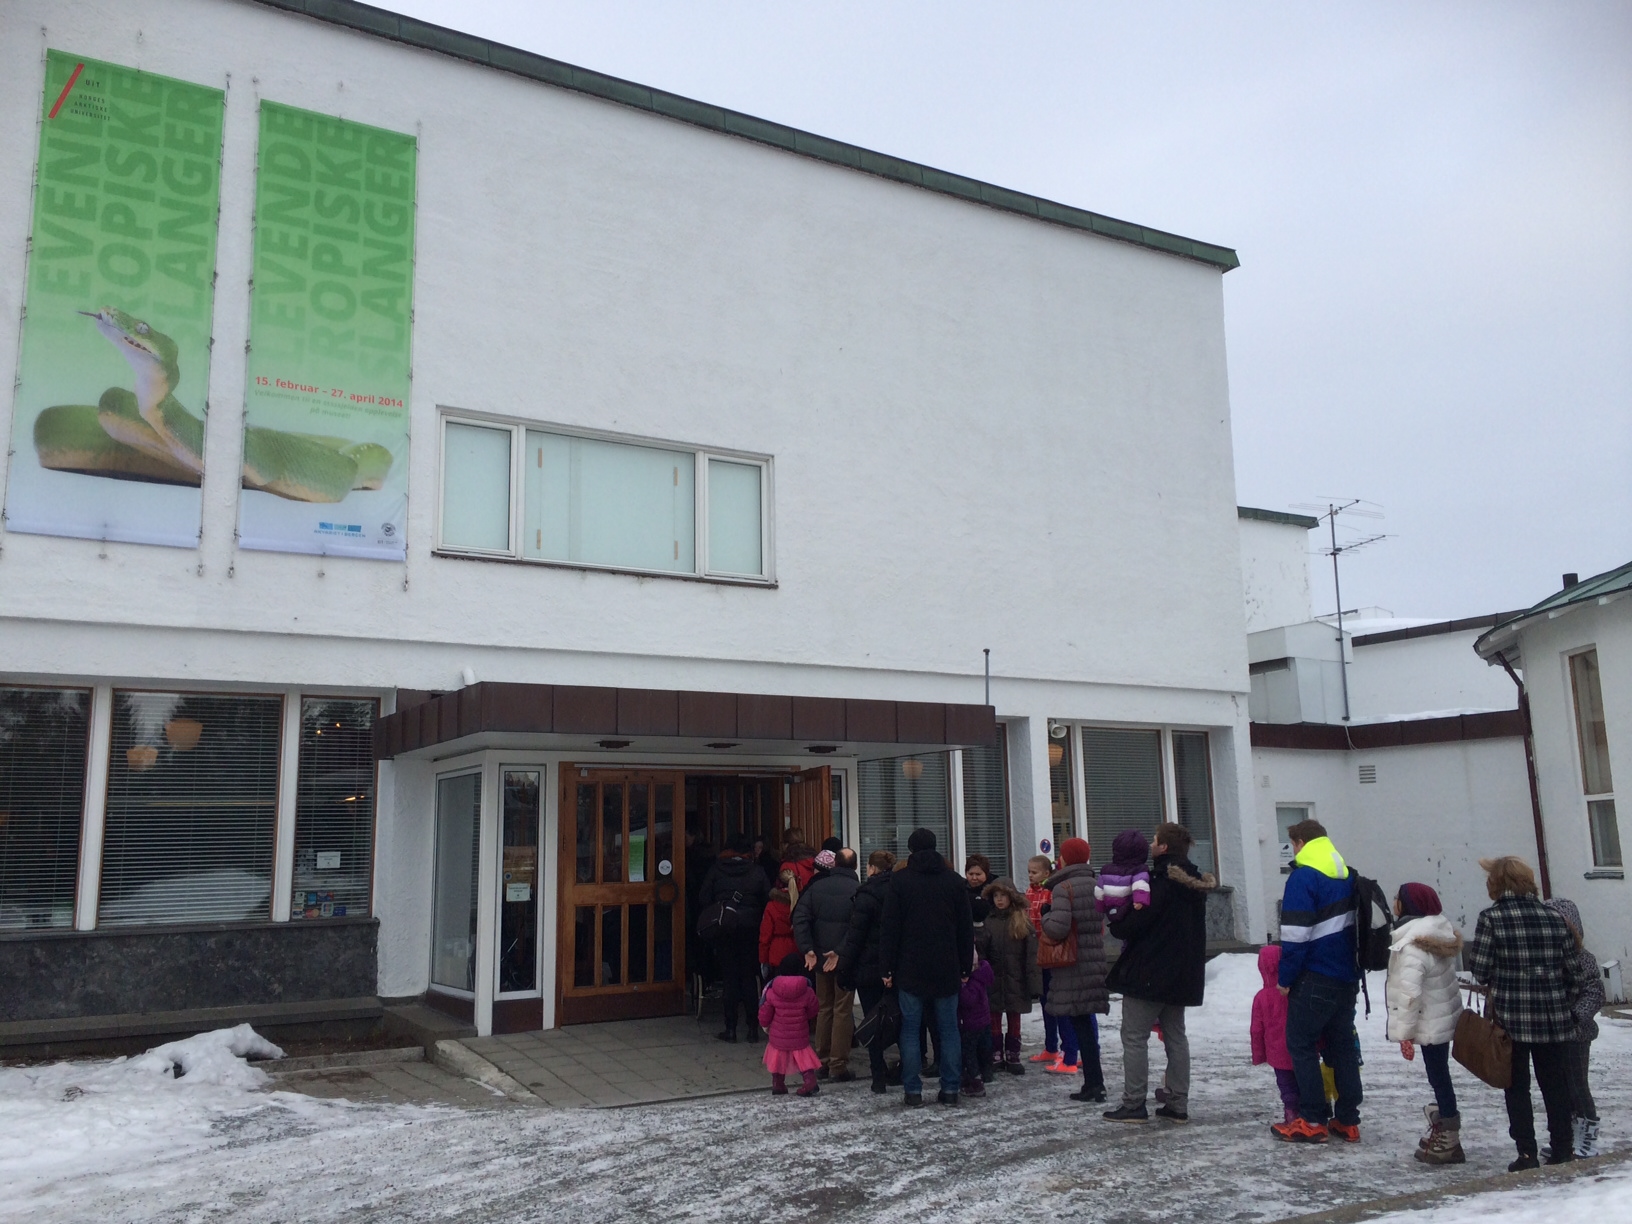 Det var lang kø utenfor Tromsø museum lørdag 22. februar, da slangeutstillingen åpnet. Foto: Marit Anne Hauan